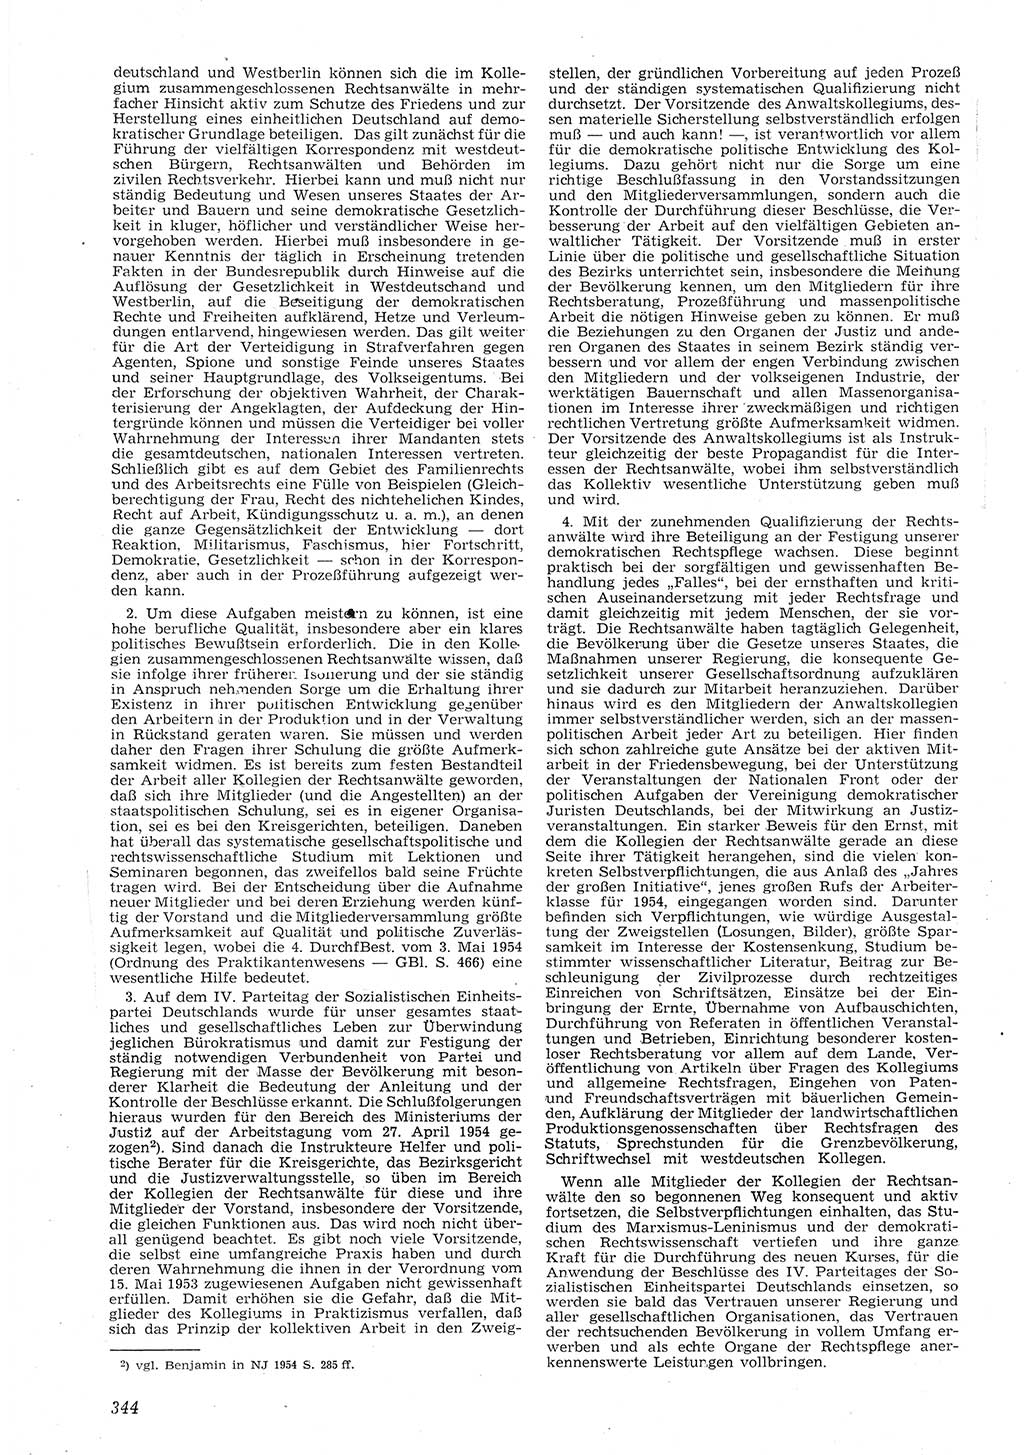 Neue Justiz (NJ), Zeitschrift für Recht und Rechtswissenschaft [Deutsche Demokratische Republik (DDR)], 8. Jahrgang 1954, Seite 344 (NJ DDR 1954, S. 344)